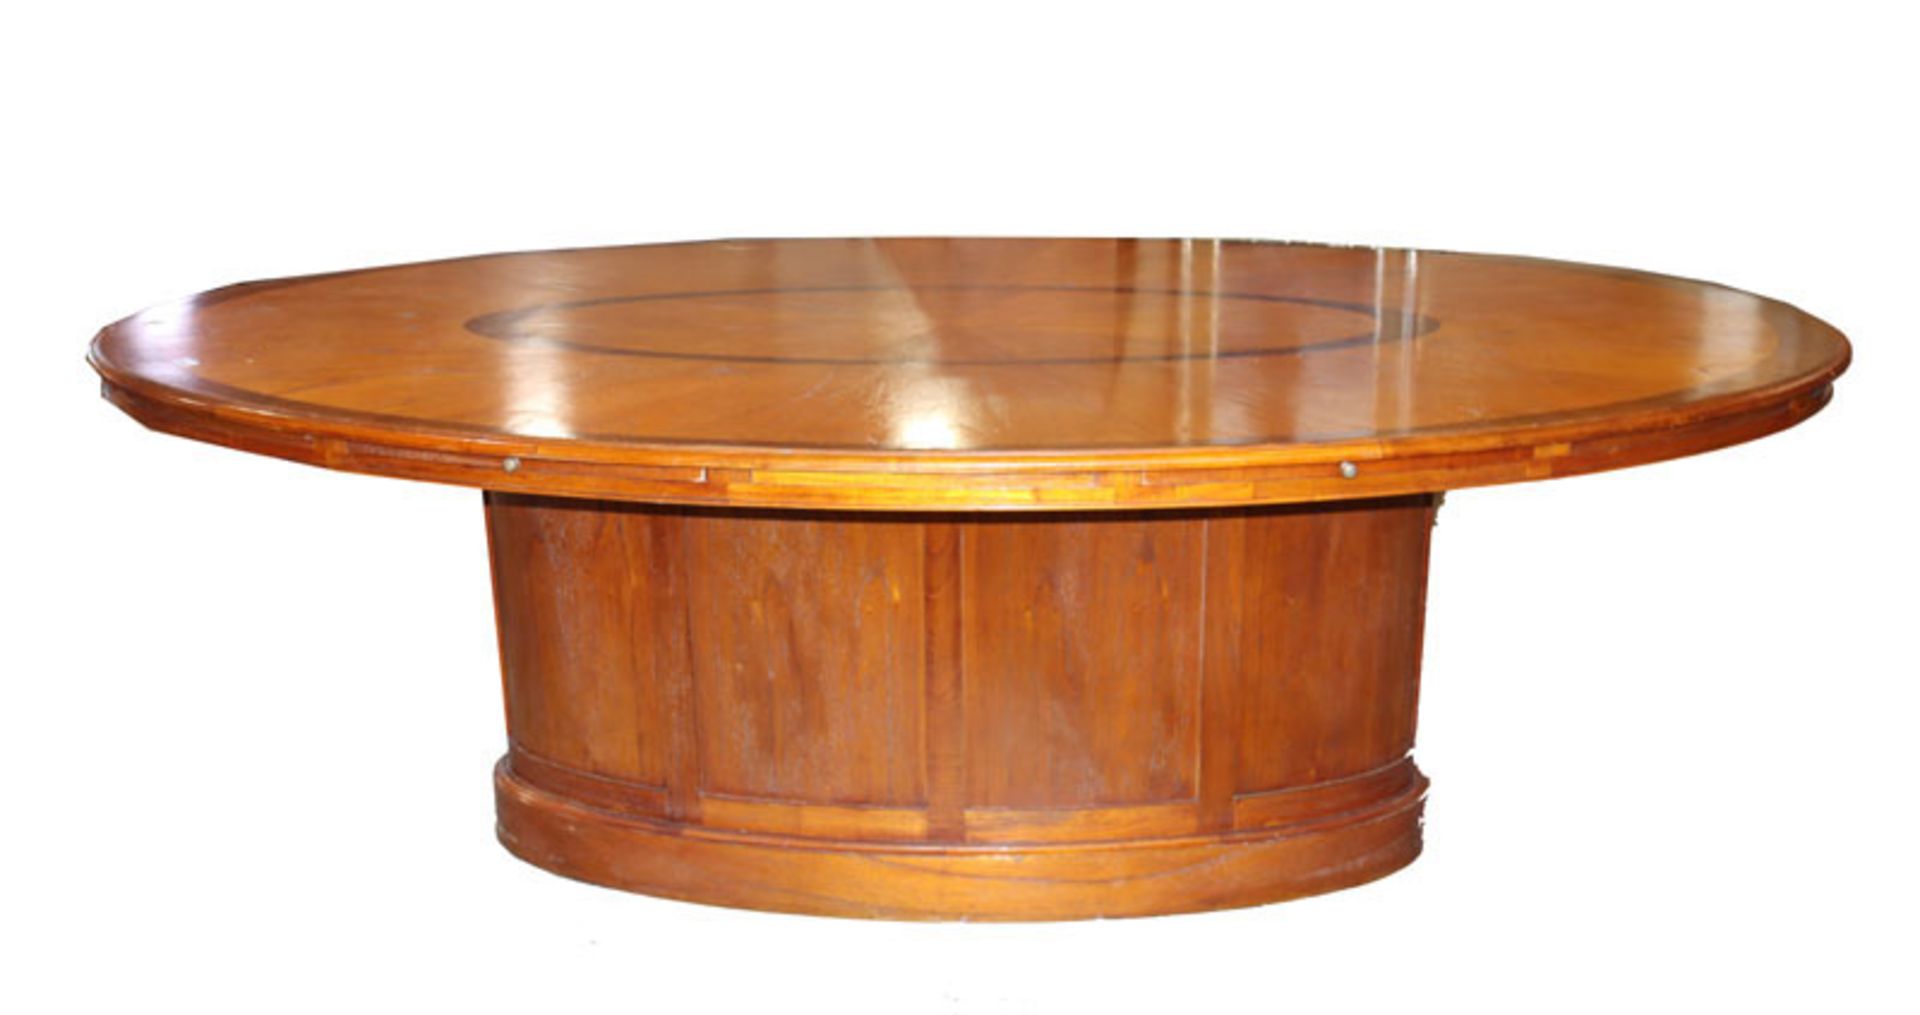 Großer, ovaler Tisch/Konferenztisch auf ovalem Mittelfuß, mit 2 ausziehbaren Platten, Tischplatte